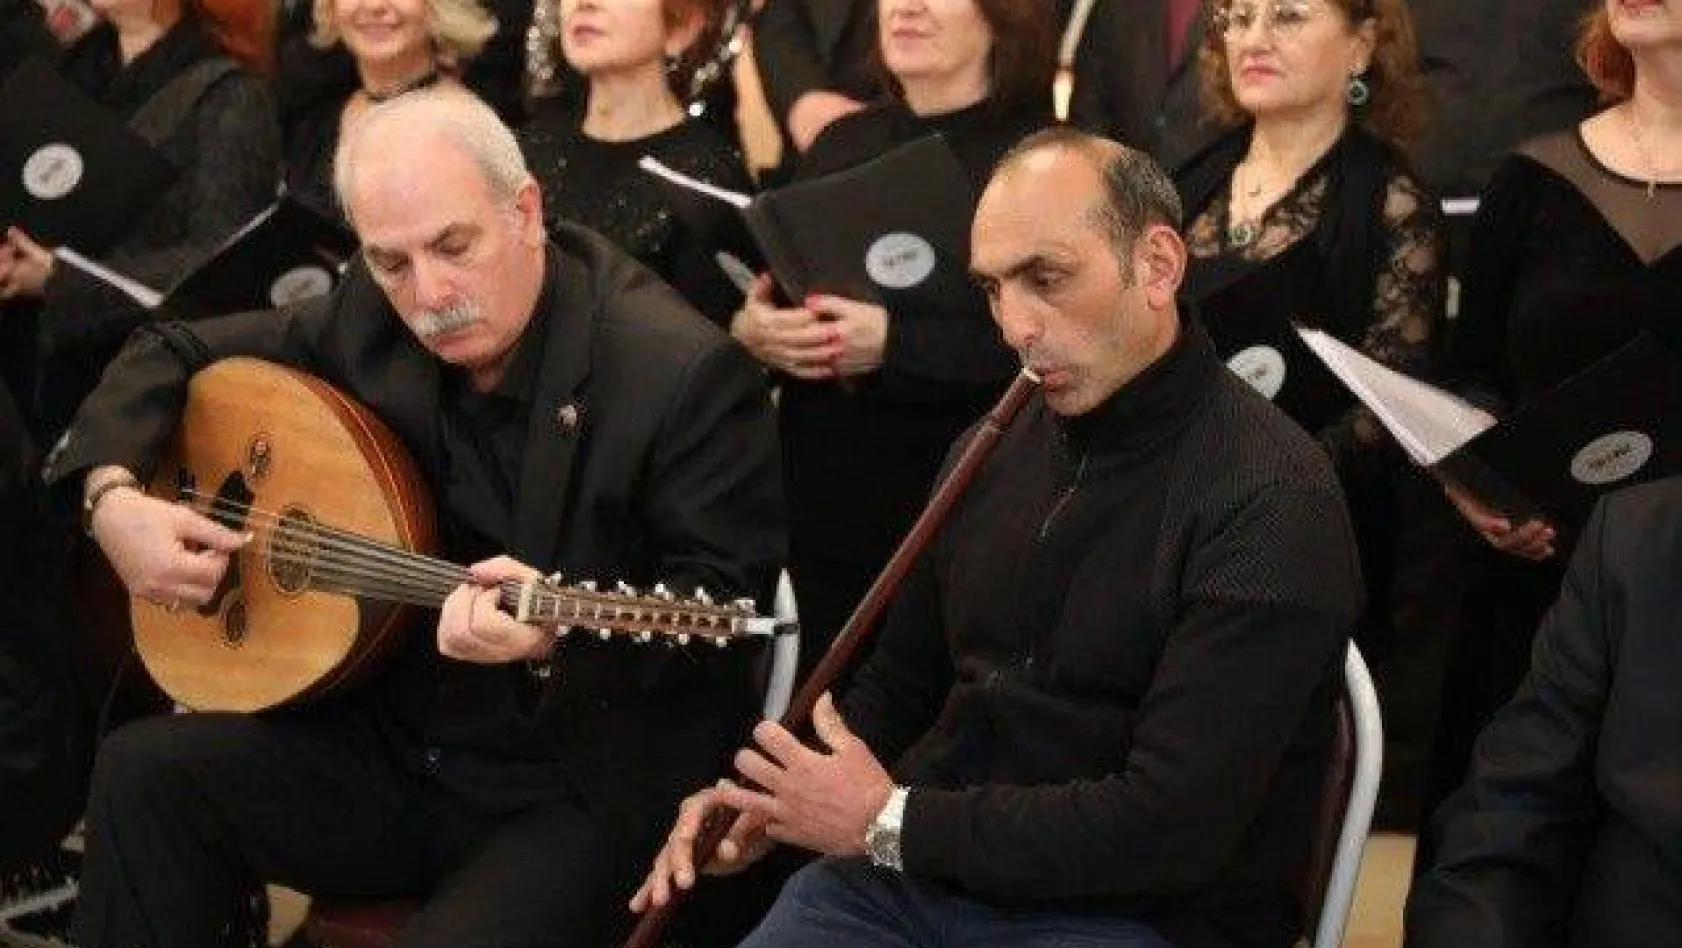 Kadıköy'de Türk Halk Müziği Konseri